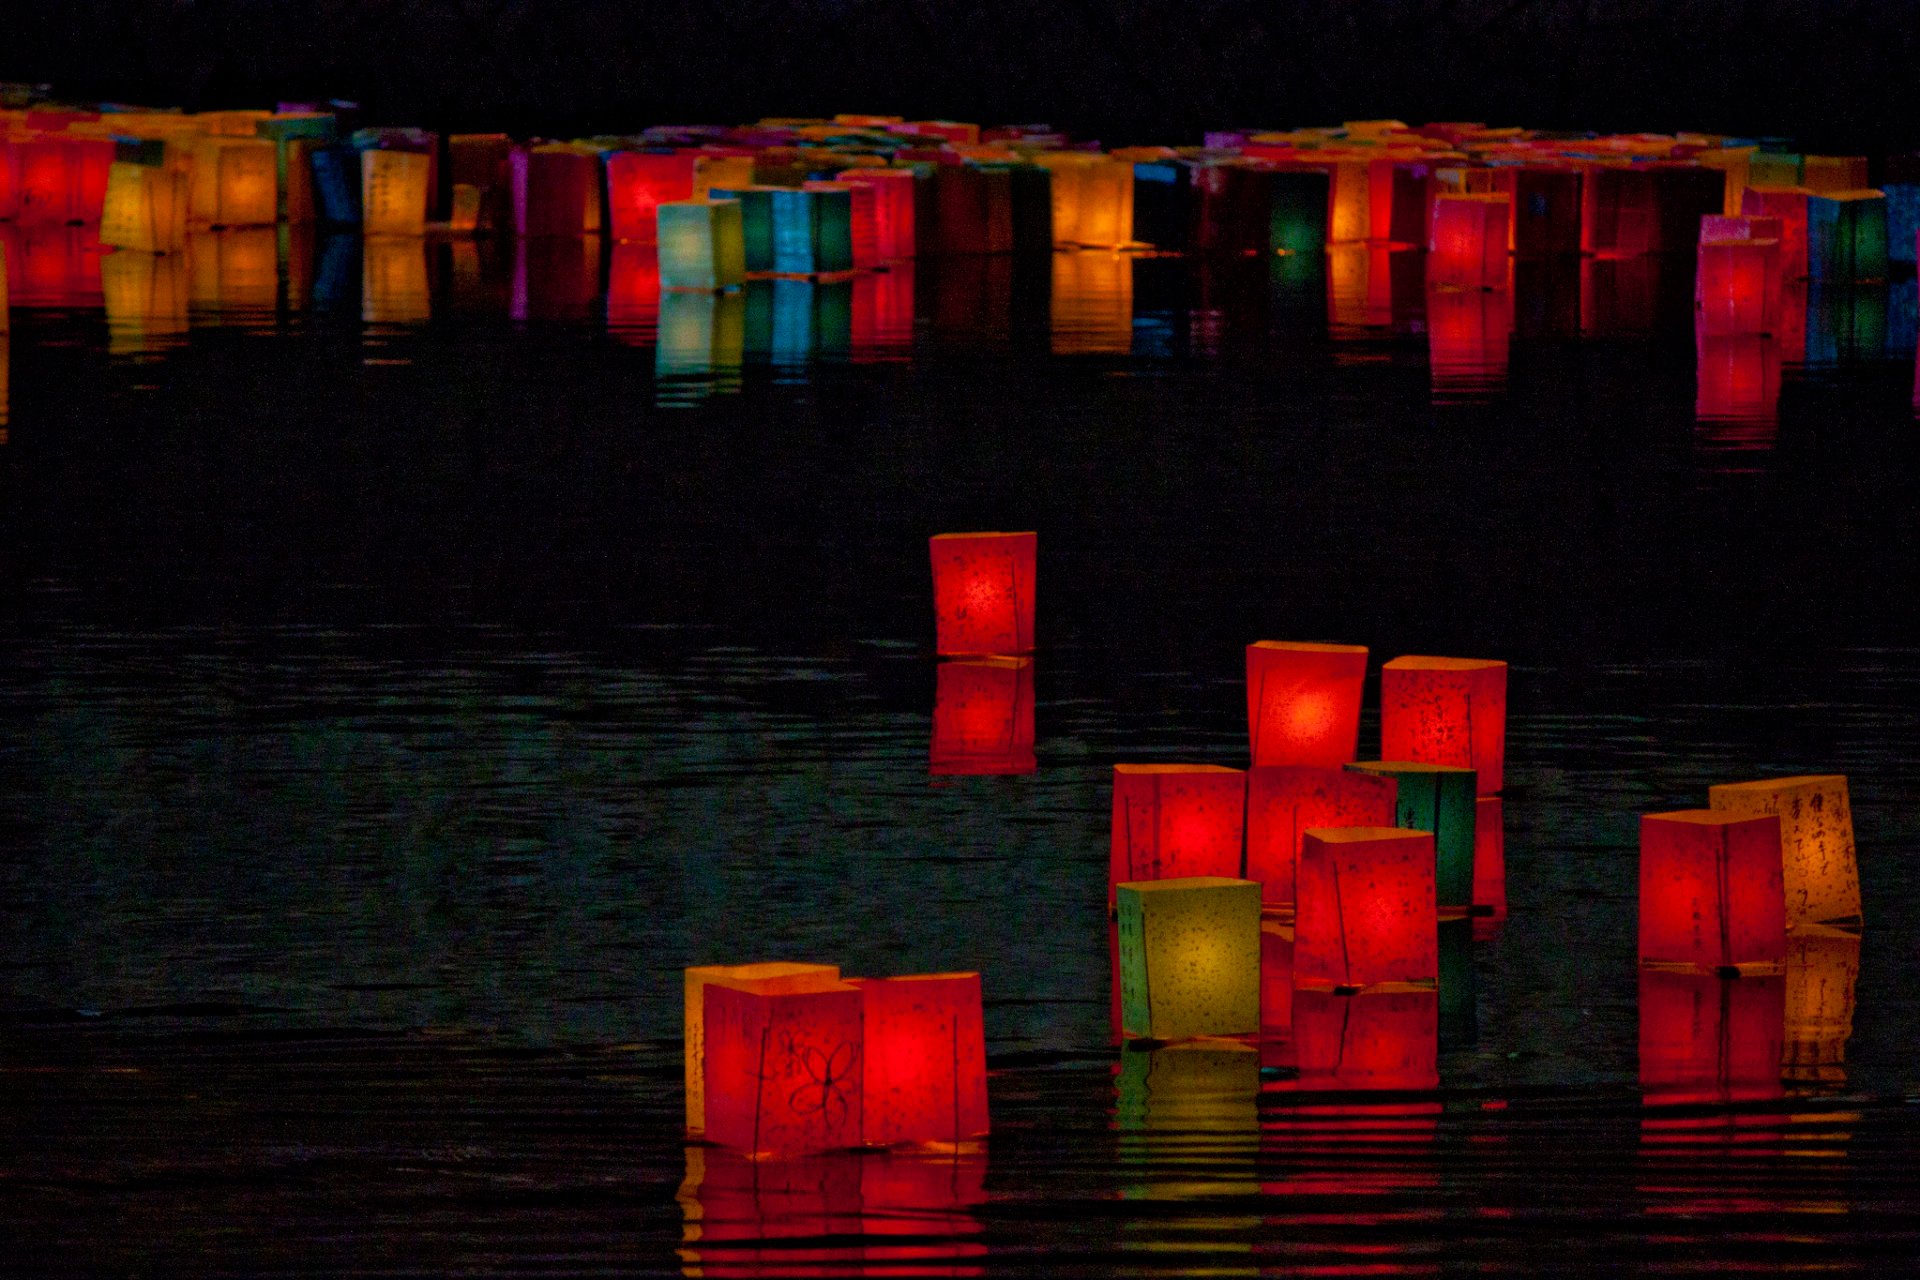 Festival de Lanternas no Japão (Toro Nagashi)